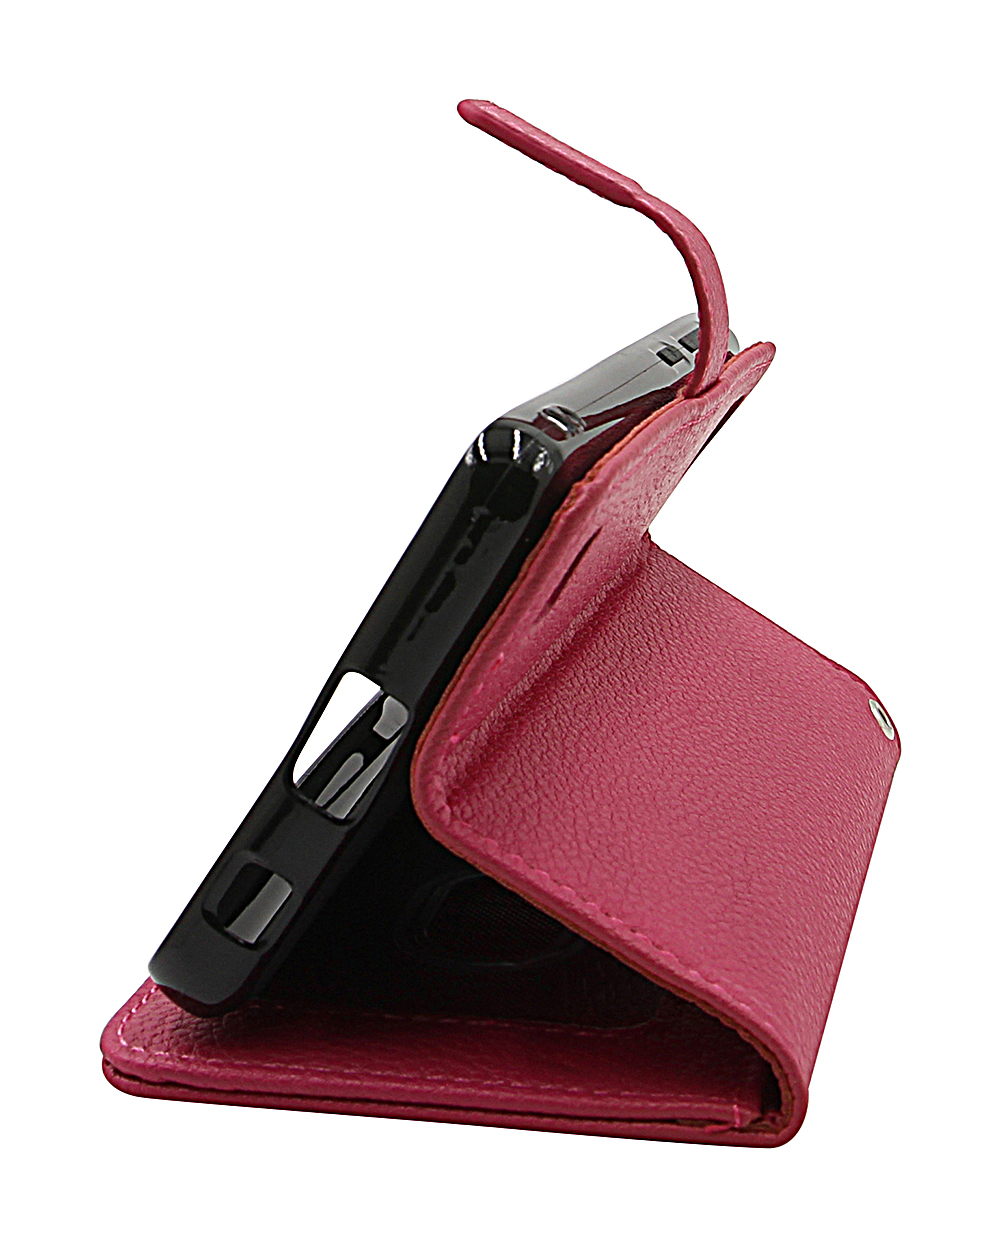 New Standcase Wallet Asus ZenFone 8 (ZS590KS)